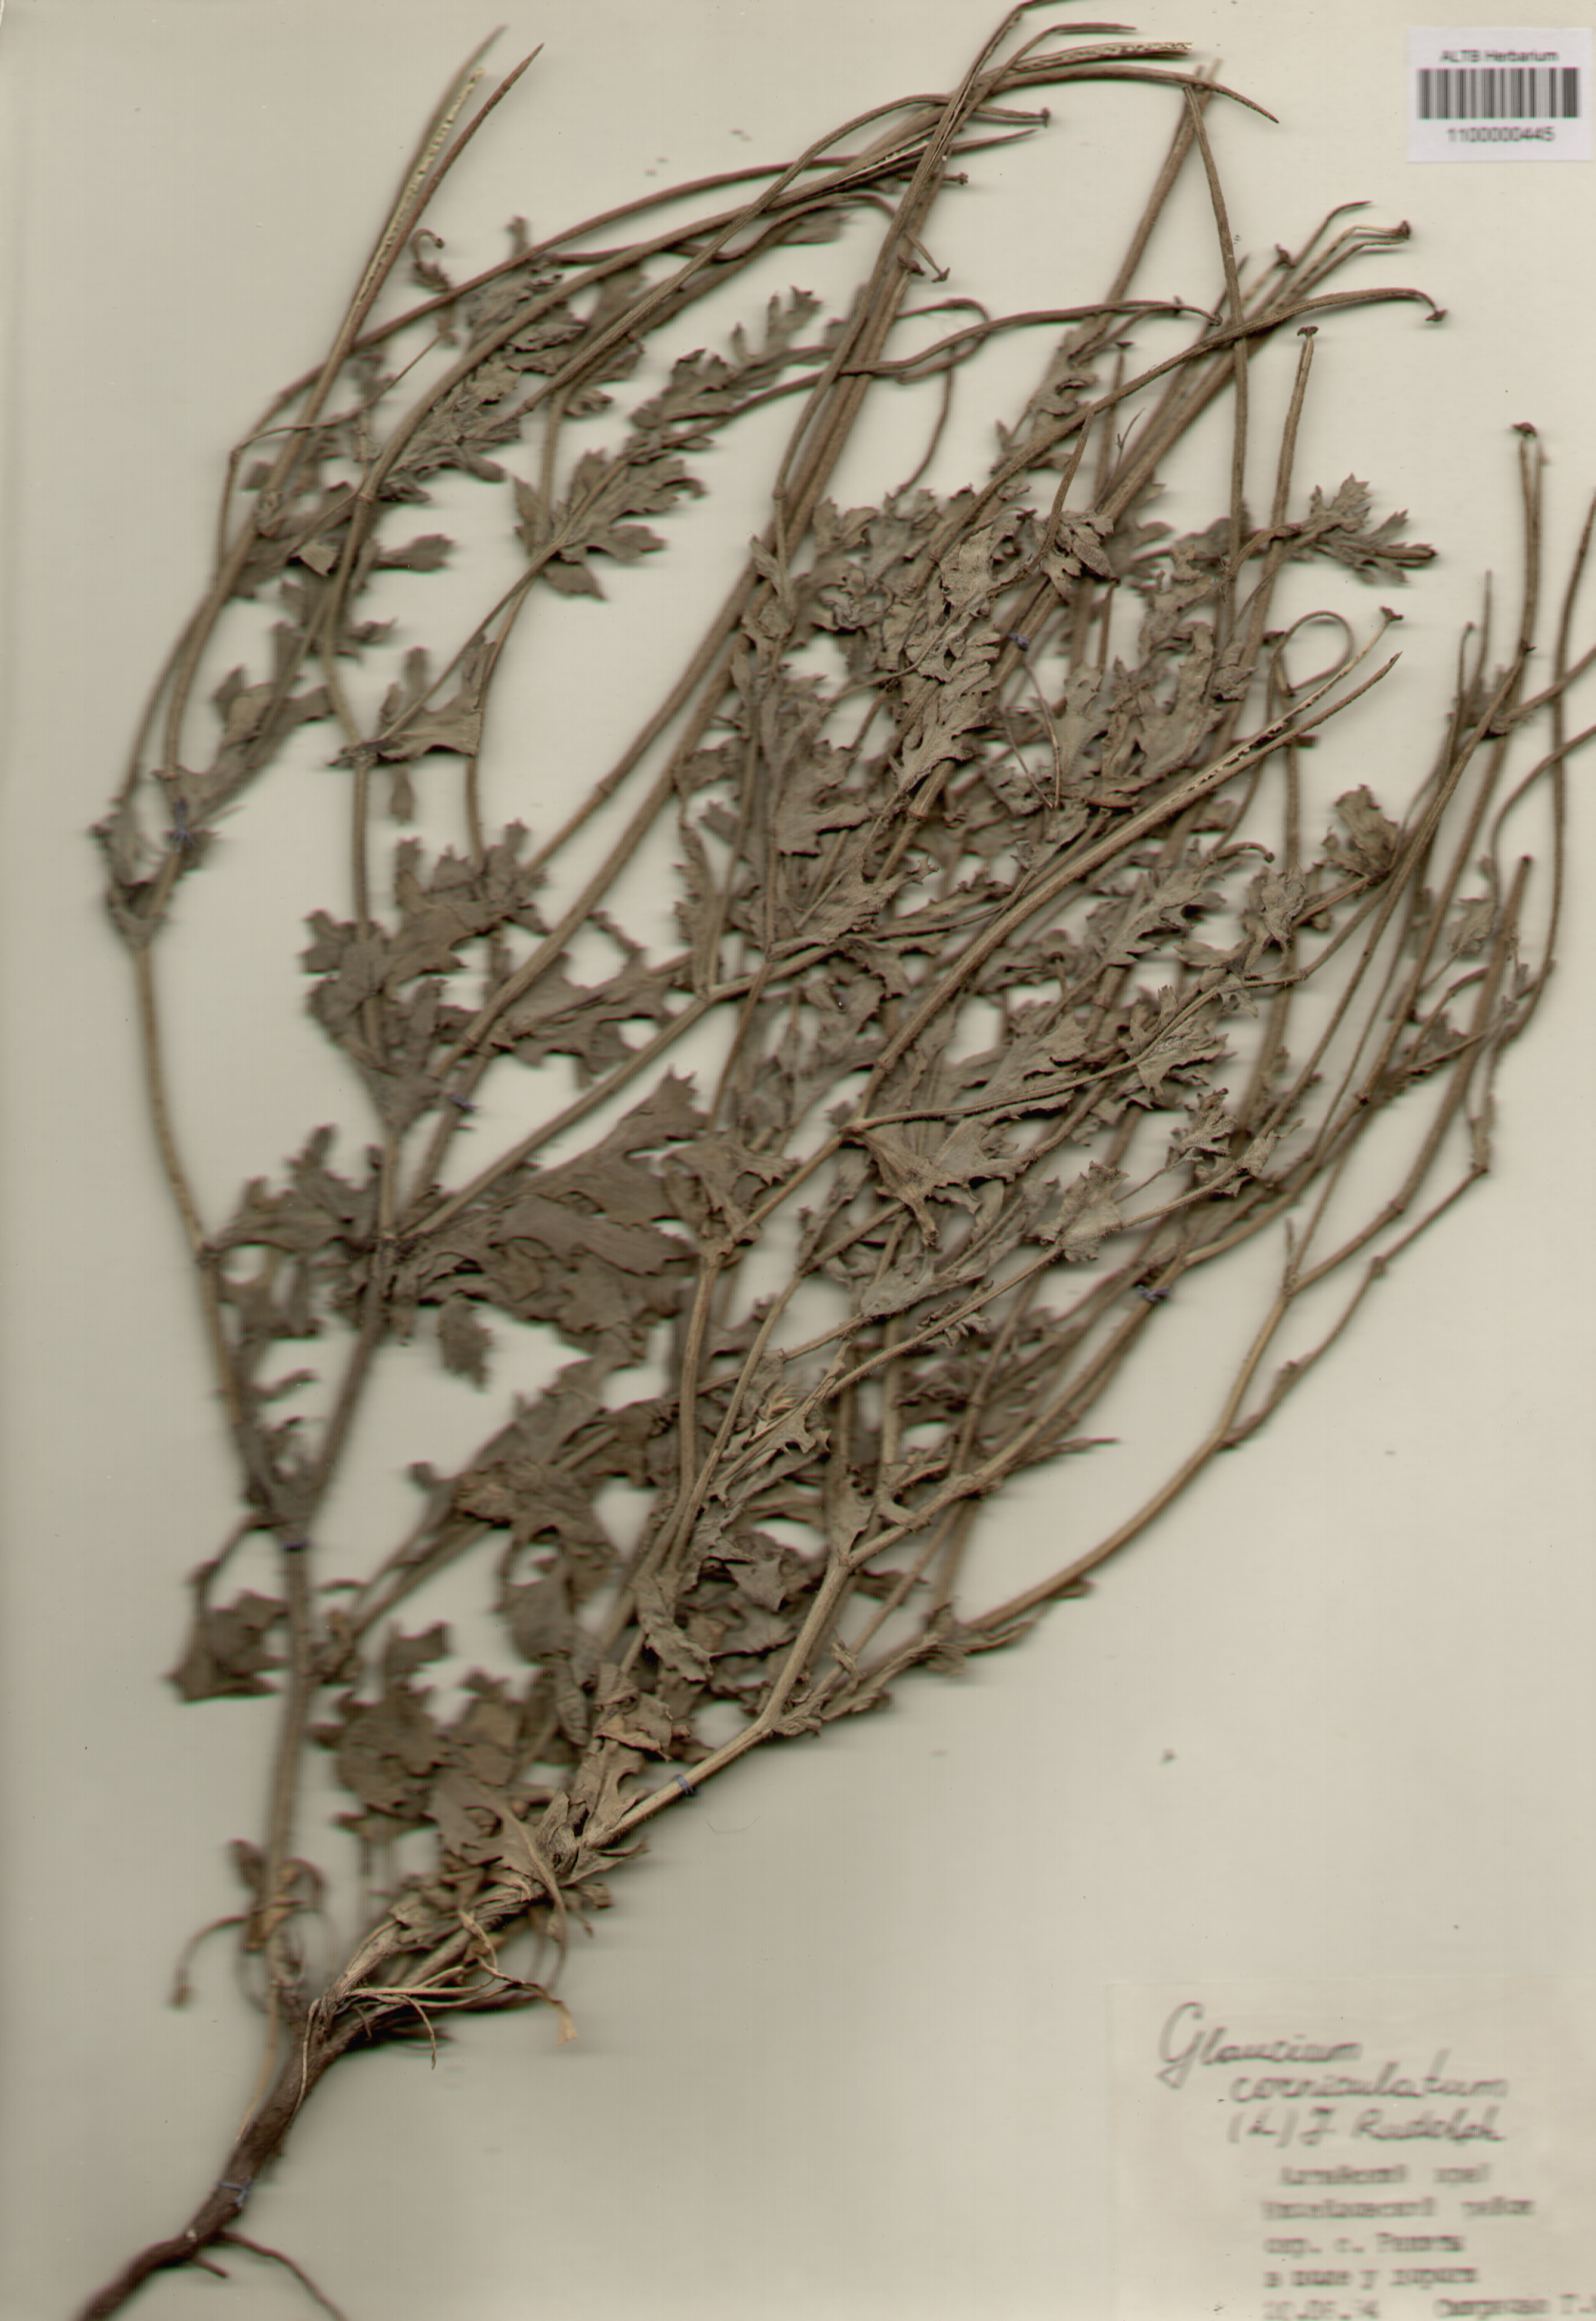 Papaveraceae,Glaucium corniculatum (L.) J. Rudolph